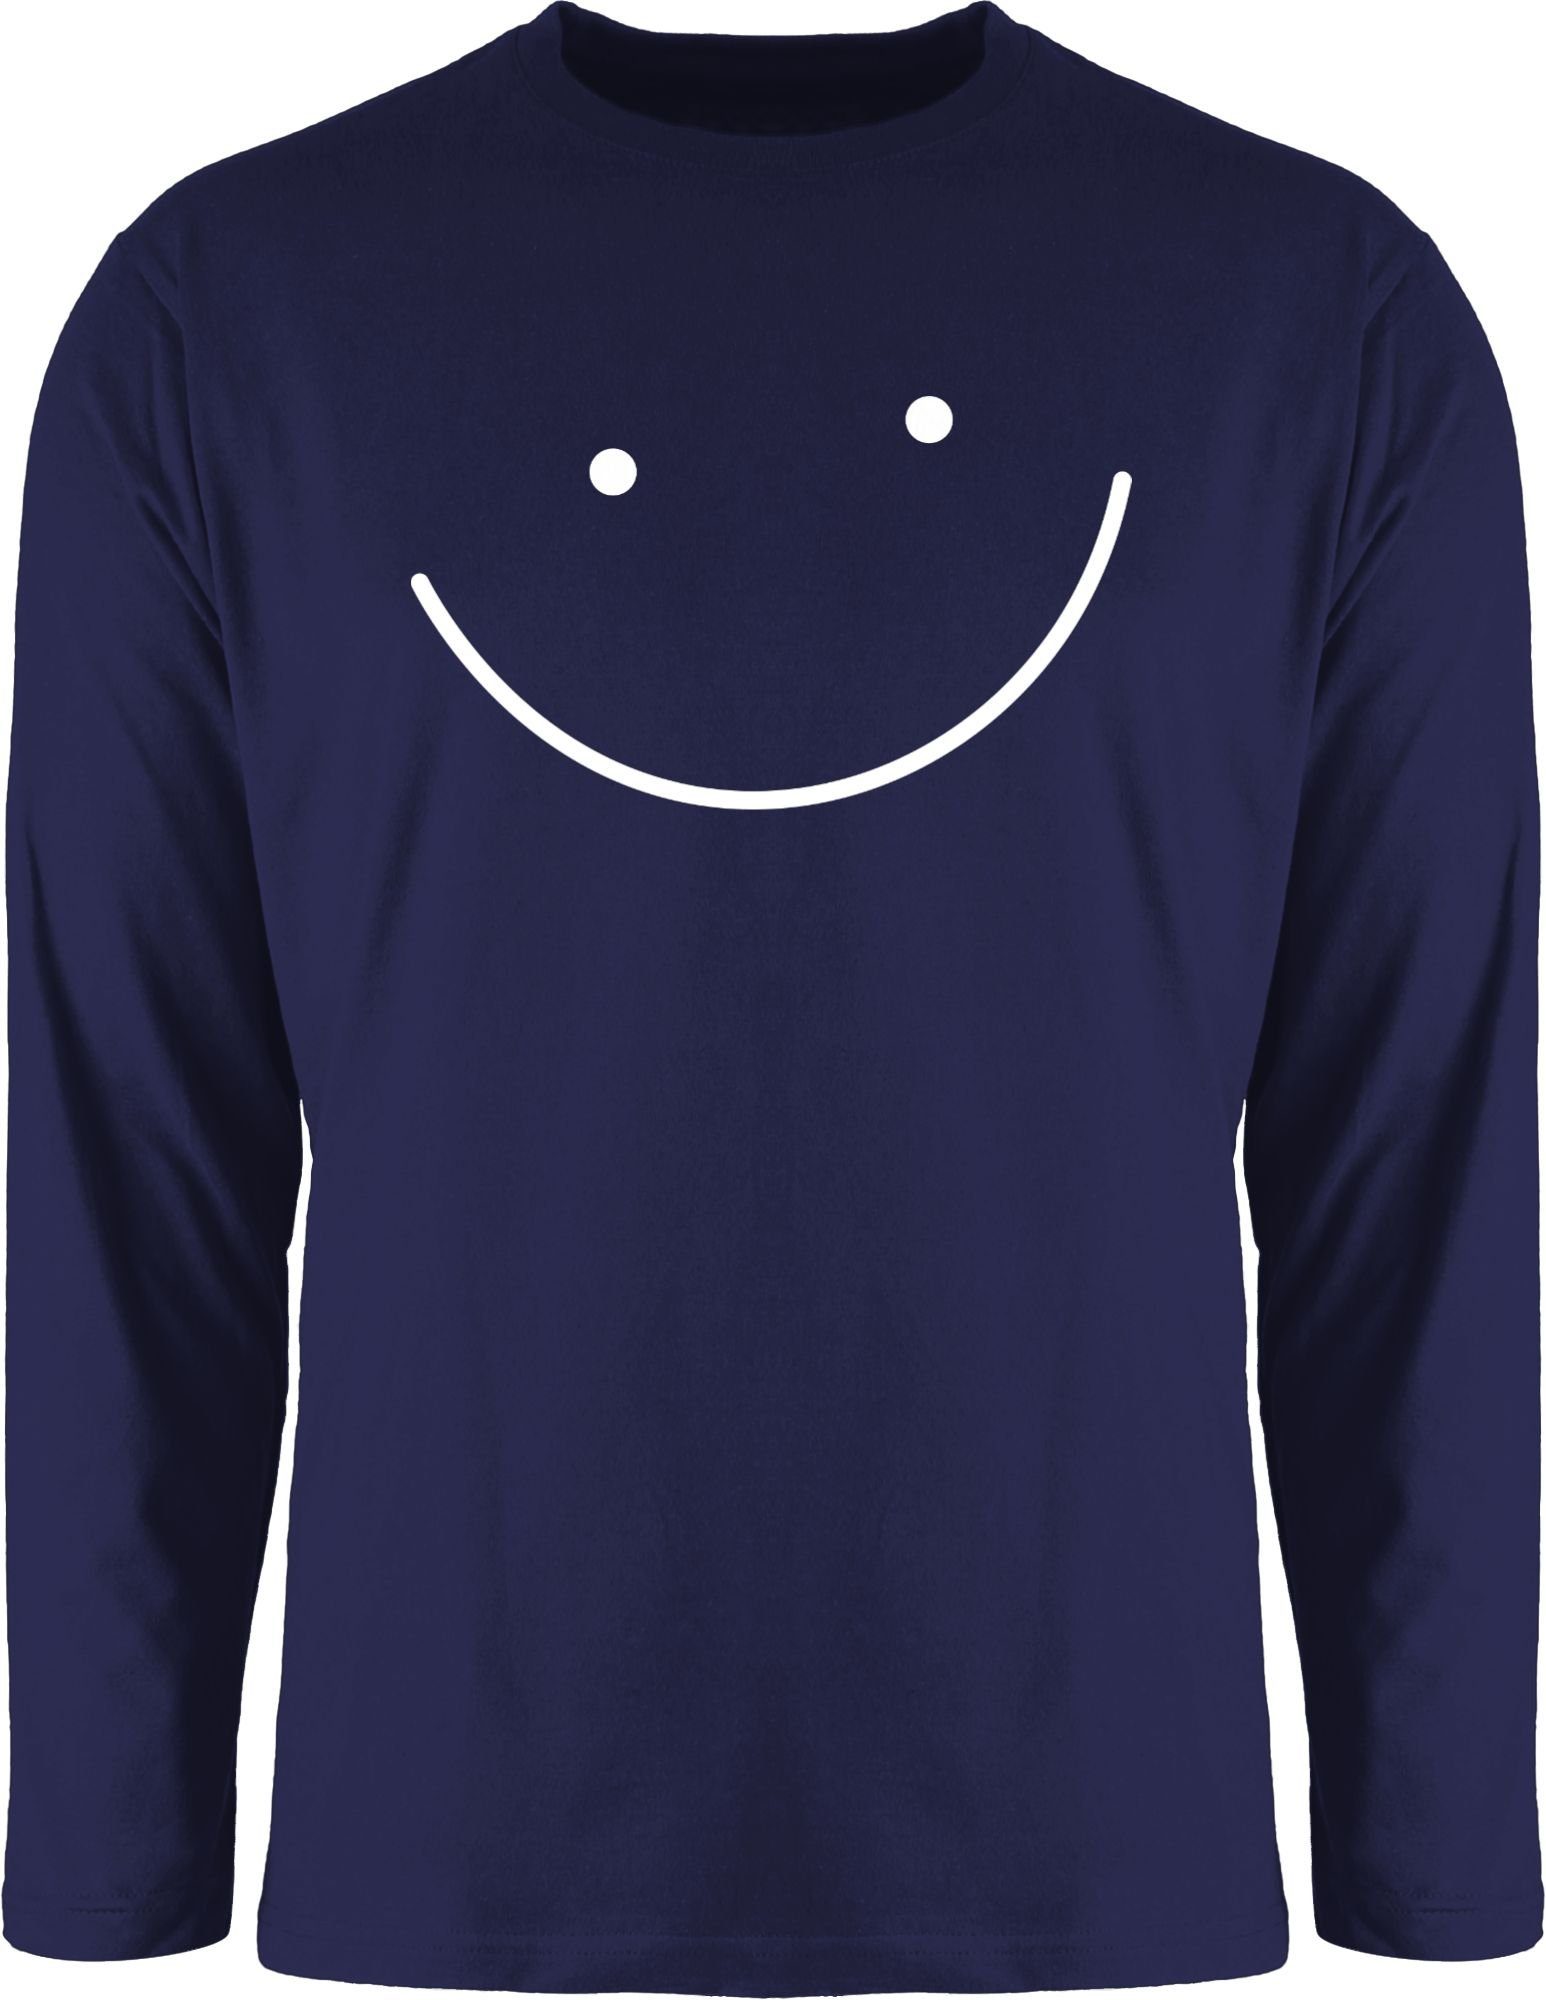 Shirtracer Rundhalsshirt Smile Gesicht Sprüche Statement 1 Navy Blau